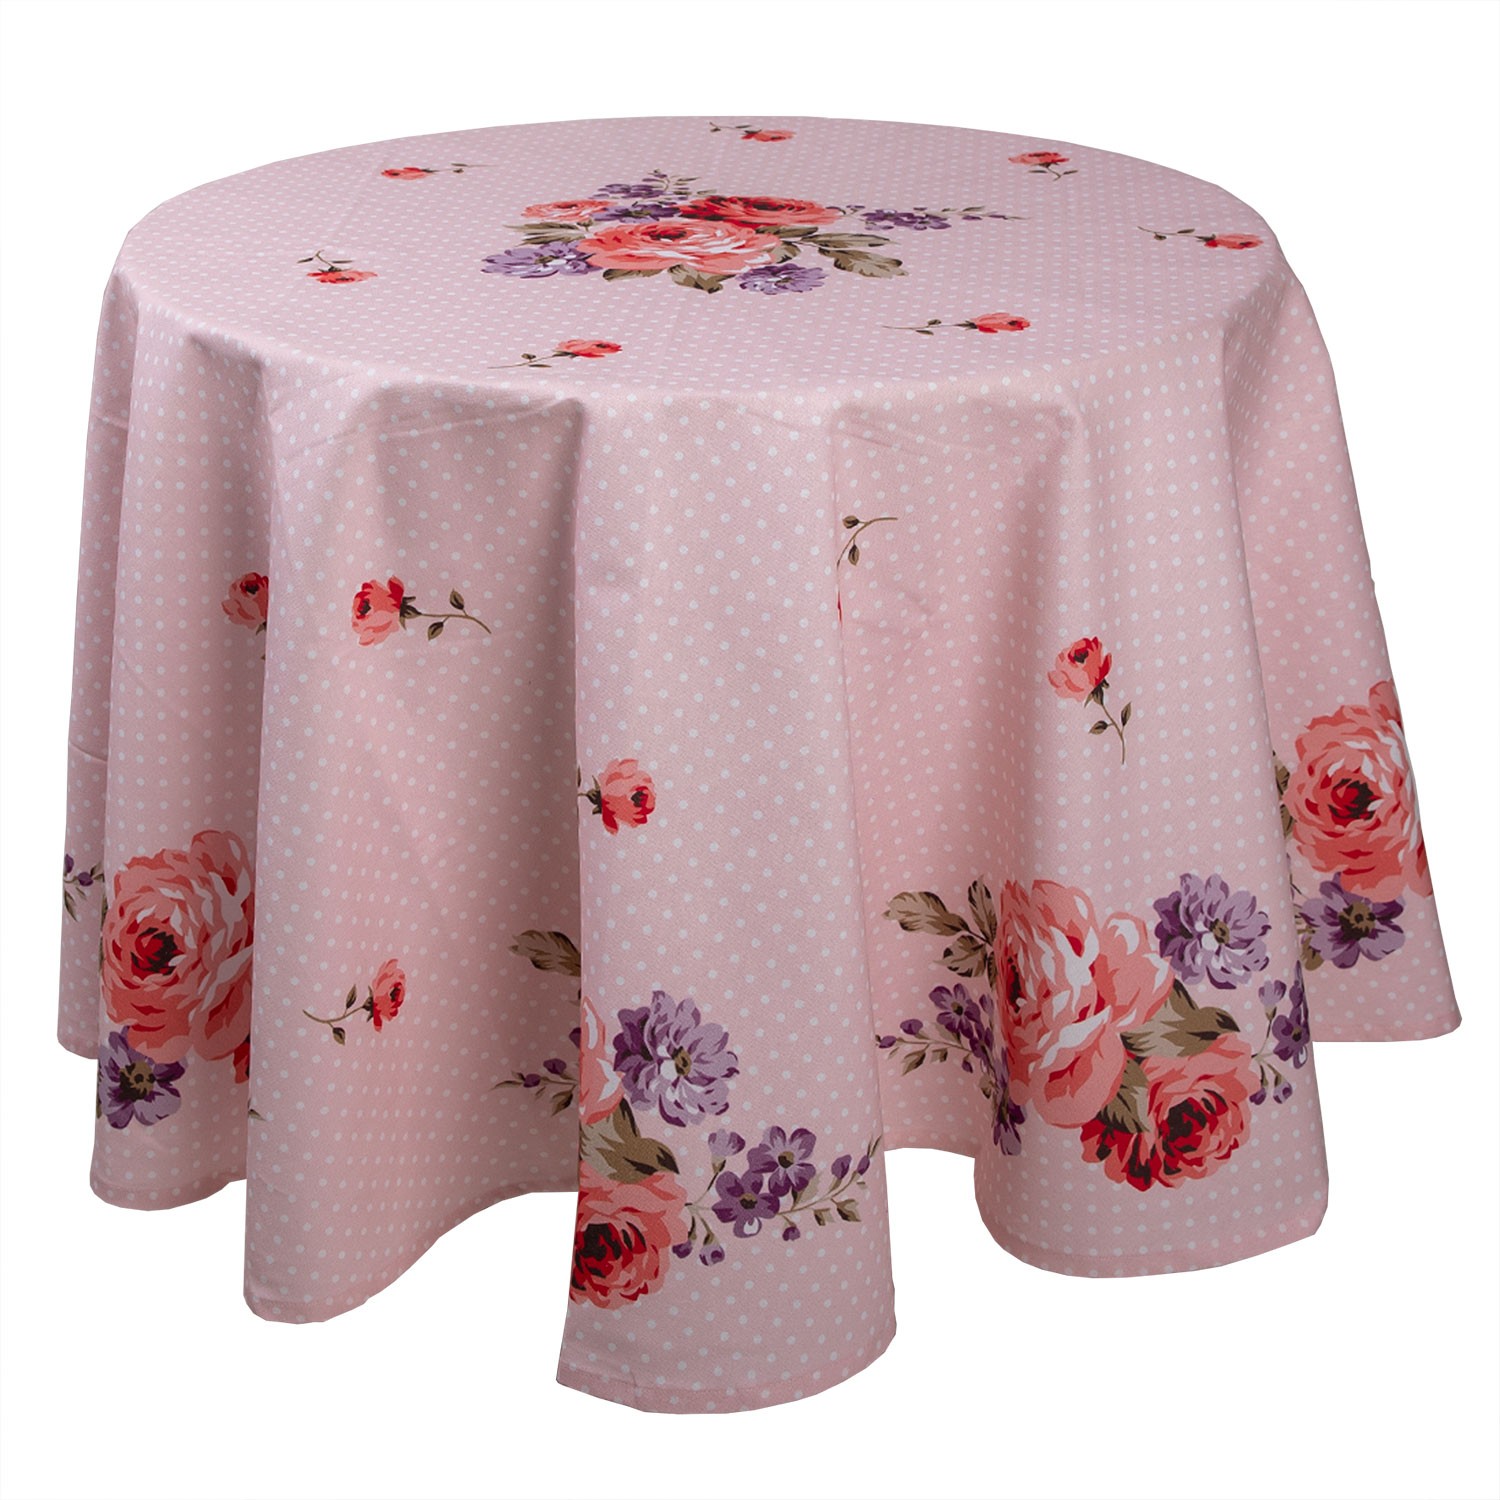 Růžový kulatý ubrus na stůl s růžemi Dotty Rose - Ø 170 cm DTR07